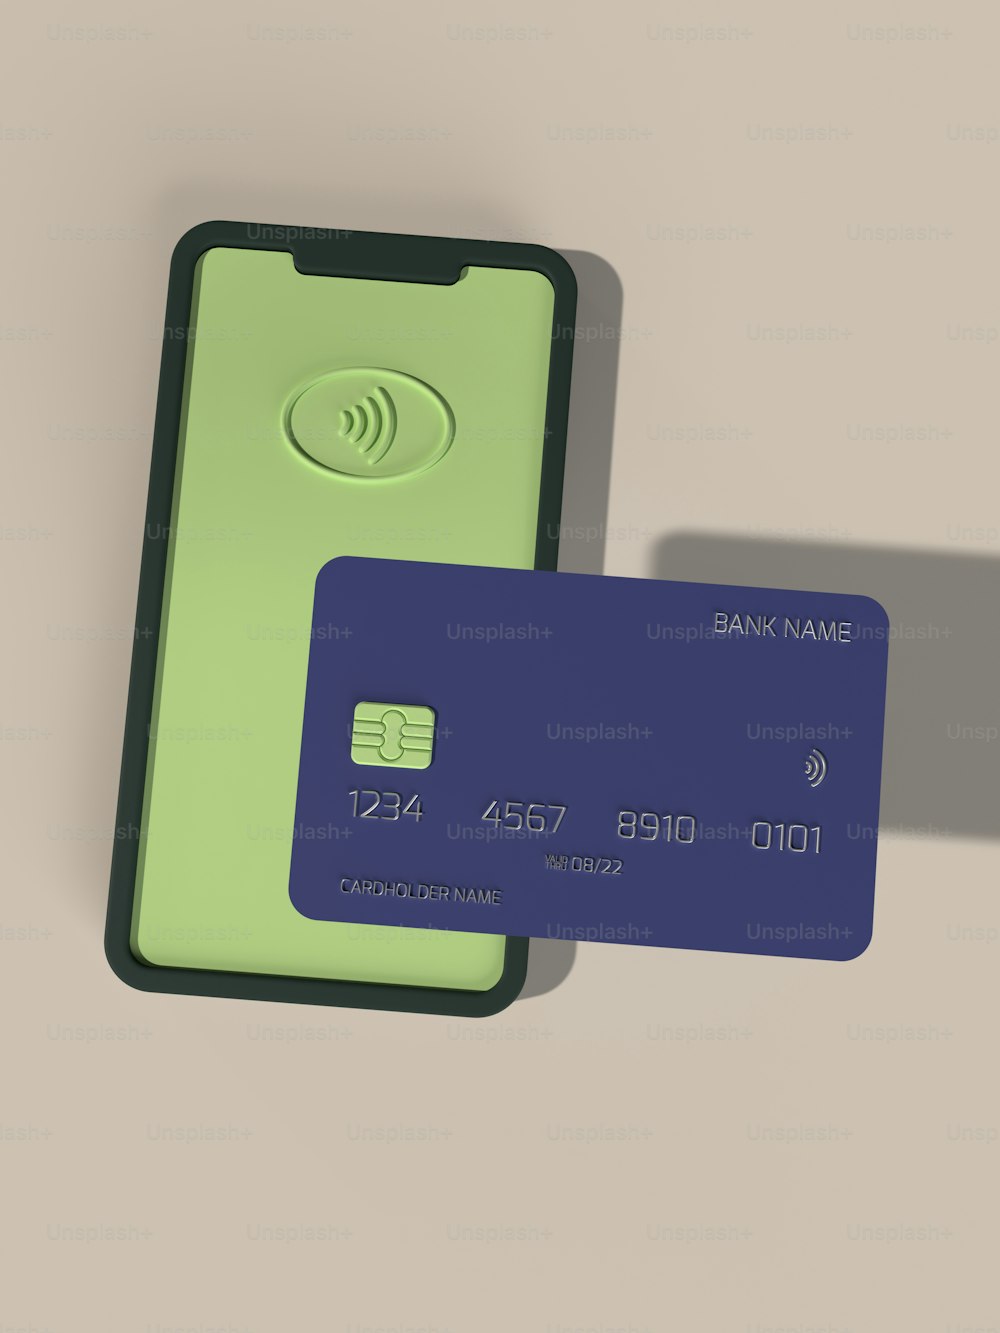 eine grüne und eine blaue Kreditkarte, die nebeneinander sitzen